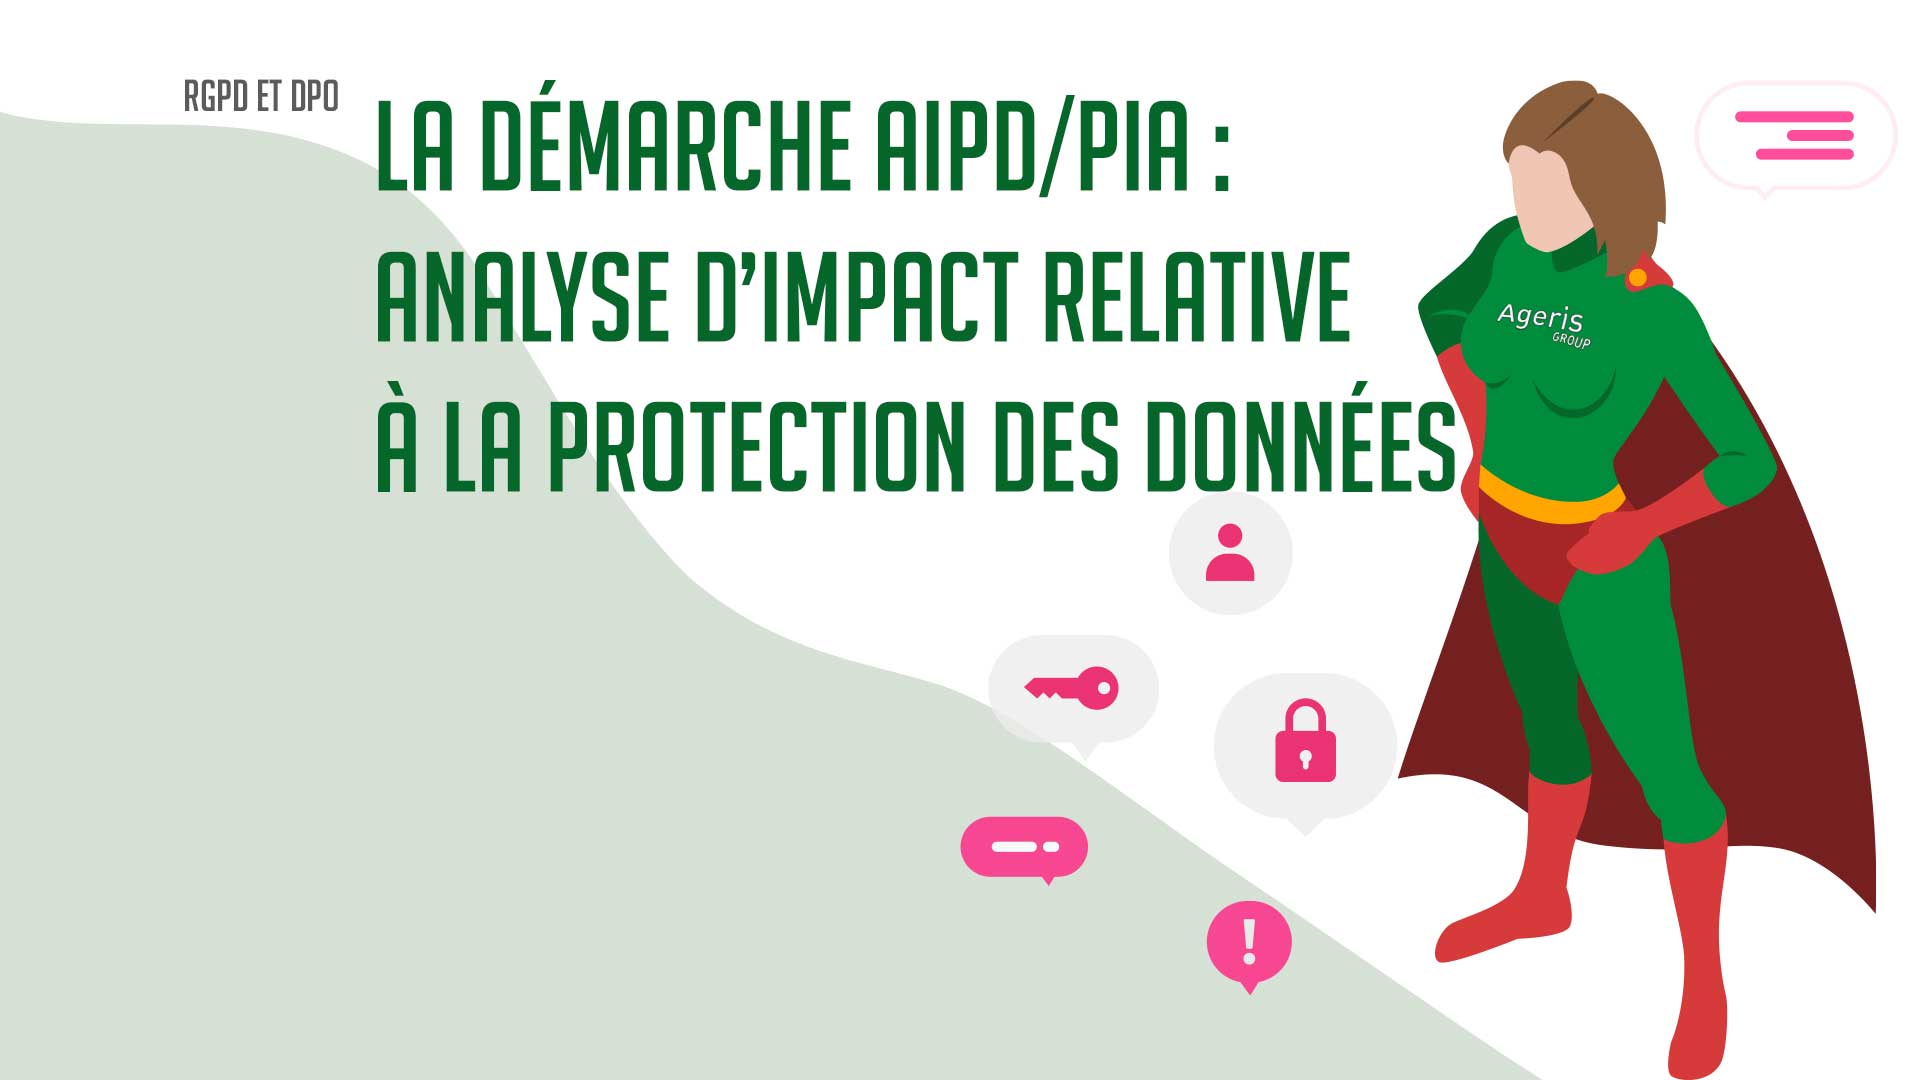 La démarche AIPD / PIA : Analyse d’Impact relative à la Protection des Données